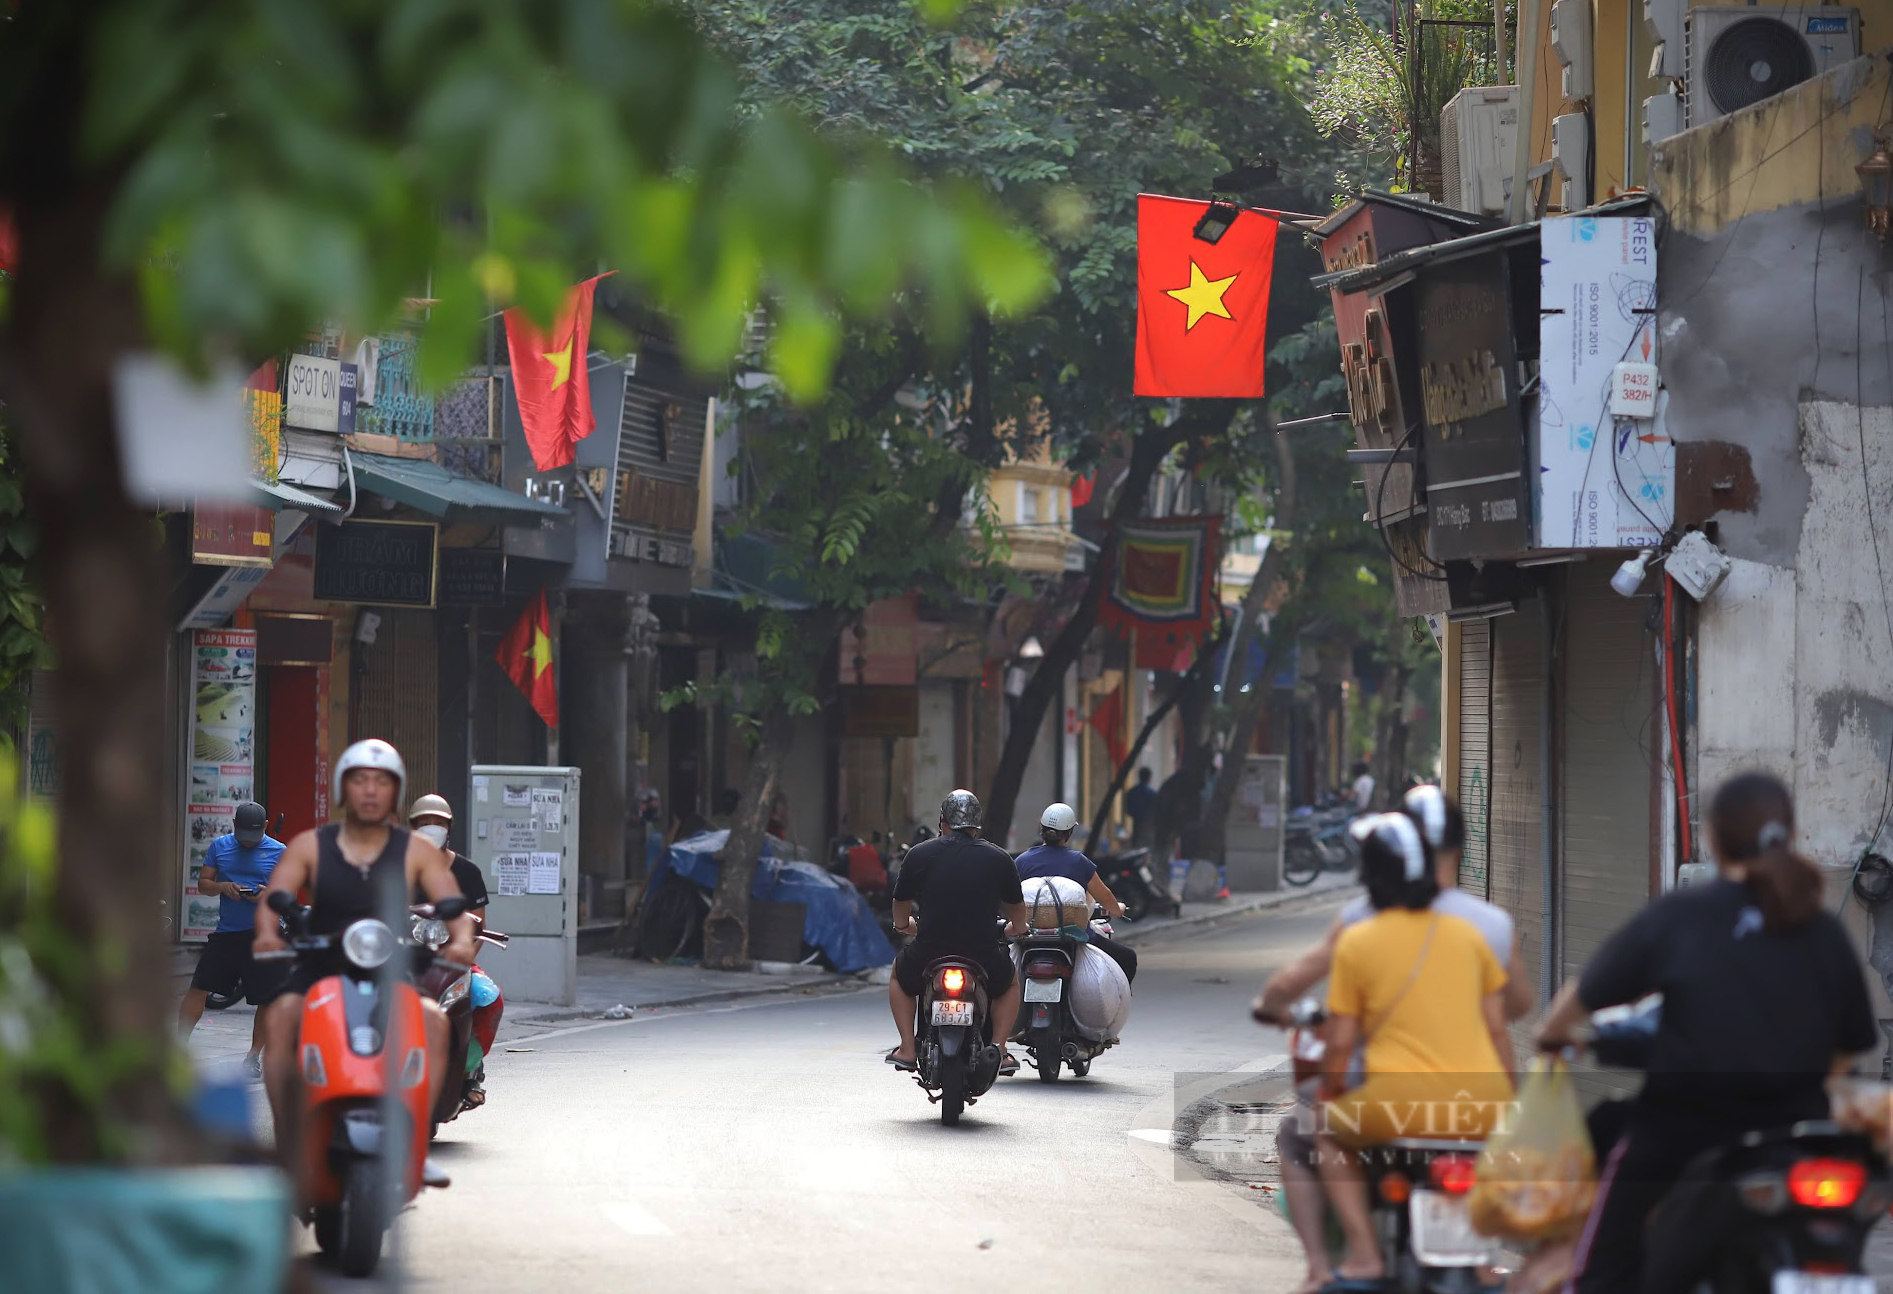 Hình ảnh bình dị trên đường phố Hà Nội trong ngày Quốc khánh 2/9 - Ảnh 7.